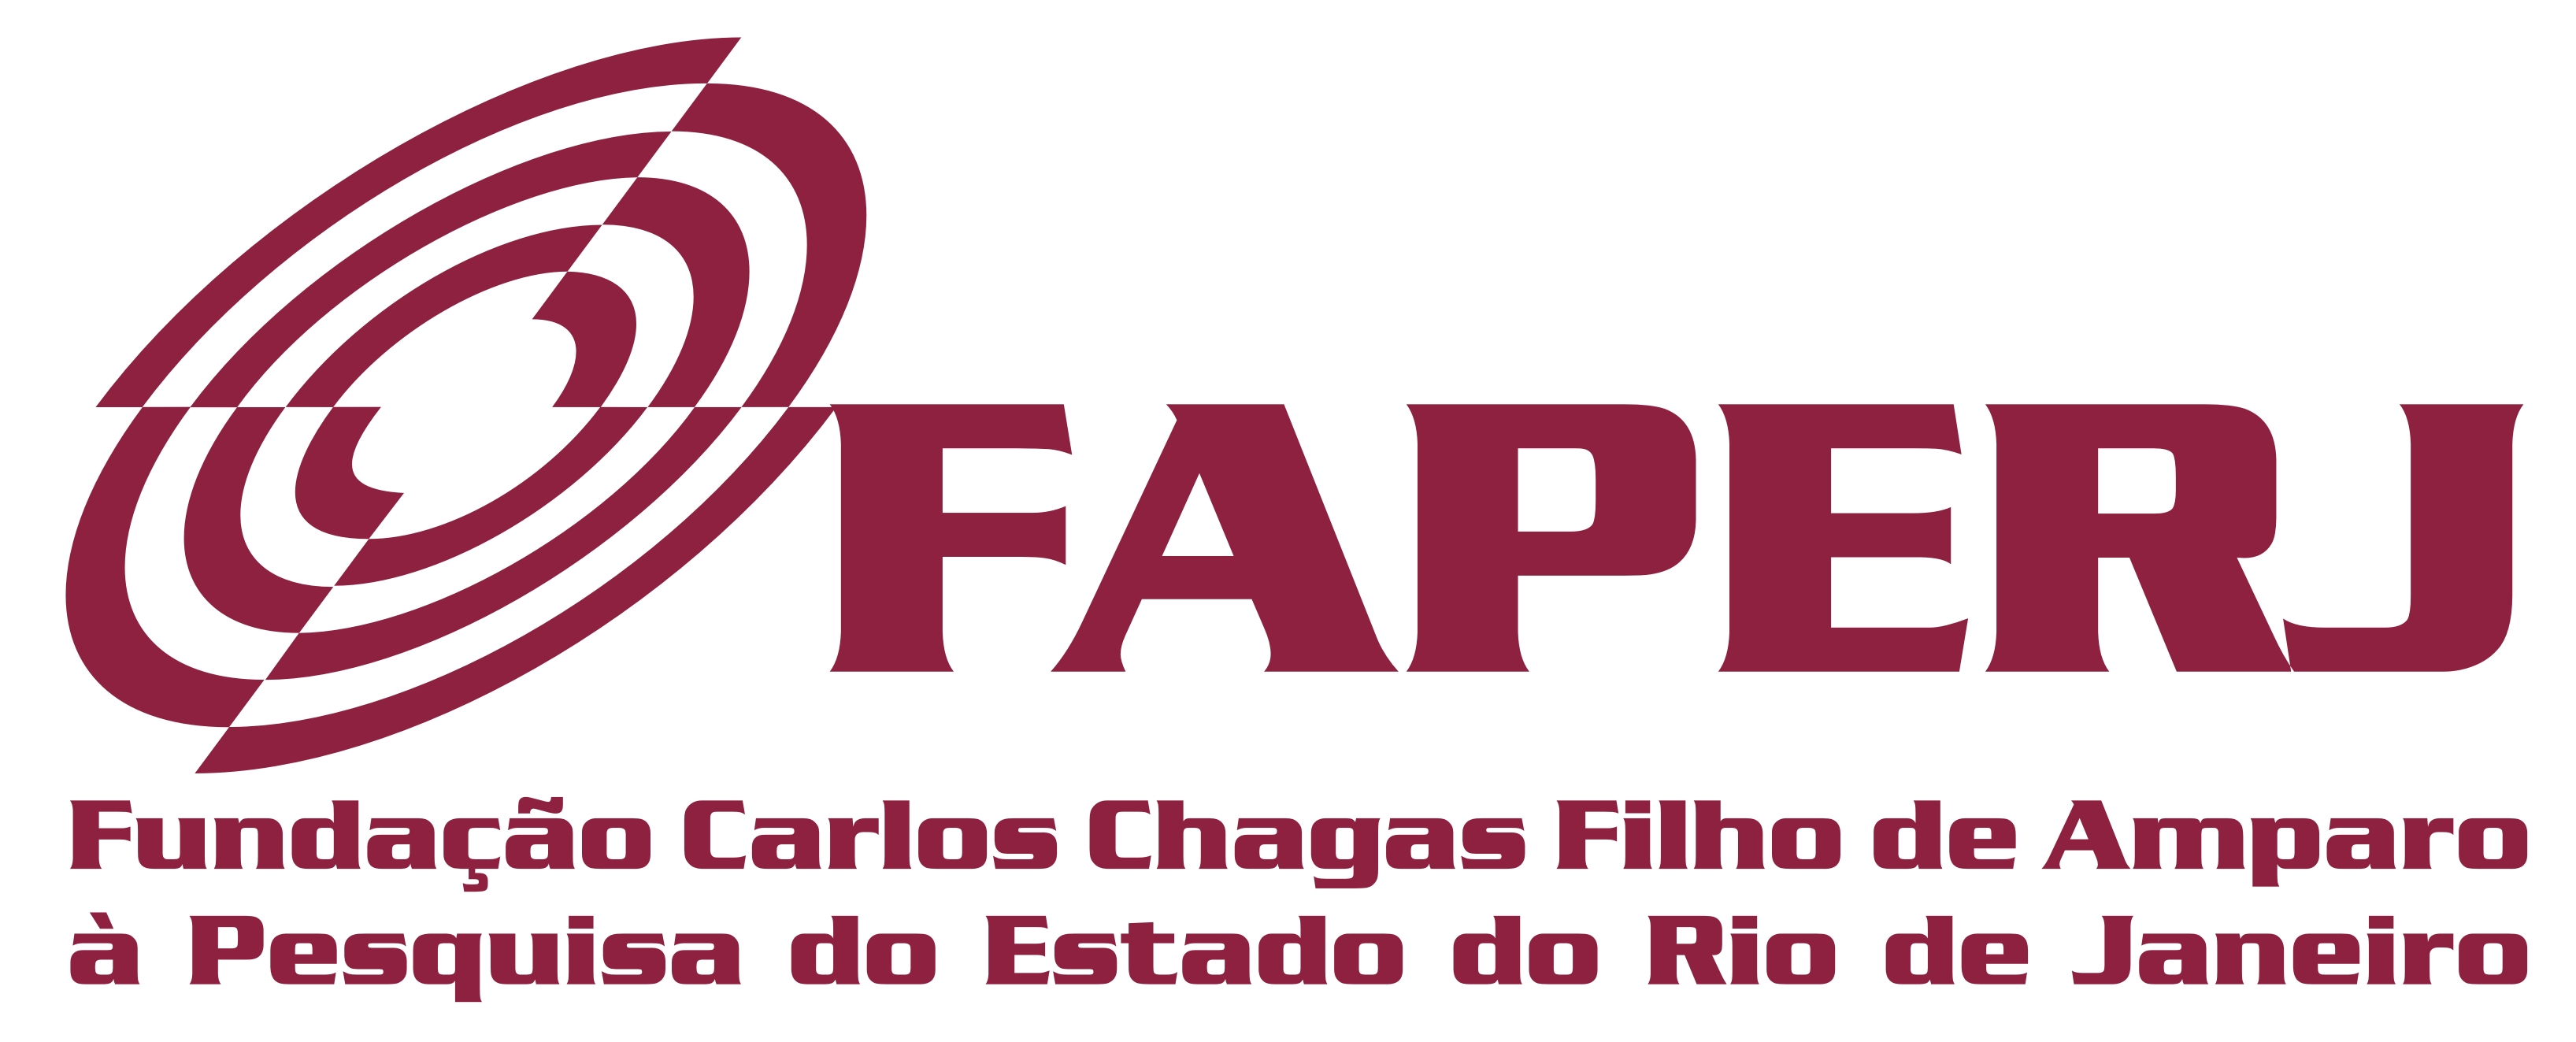 Logo of FAPERJ